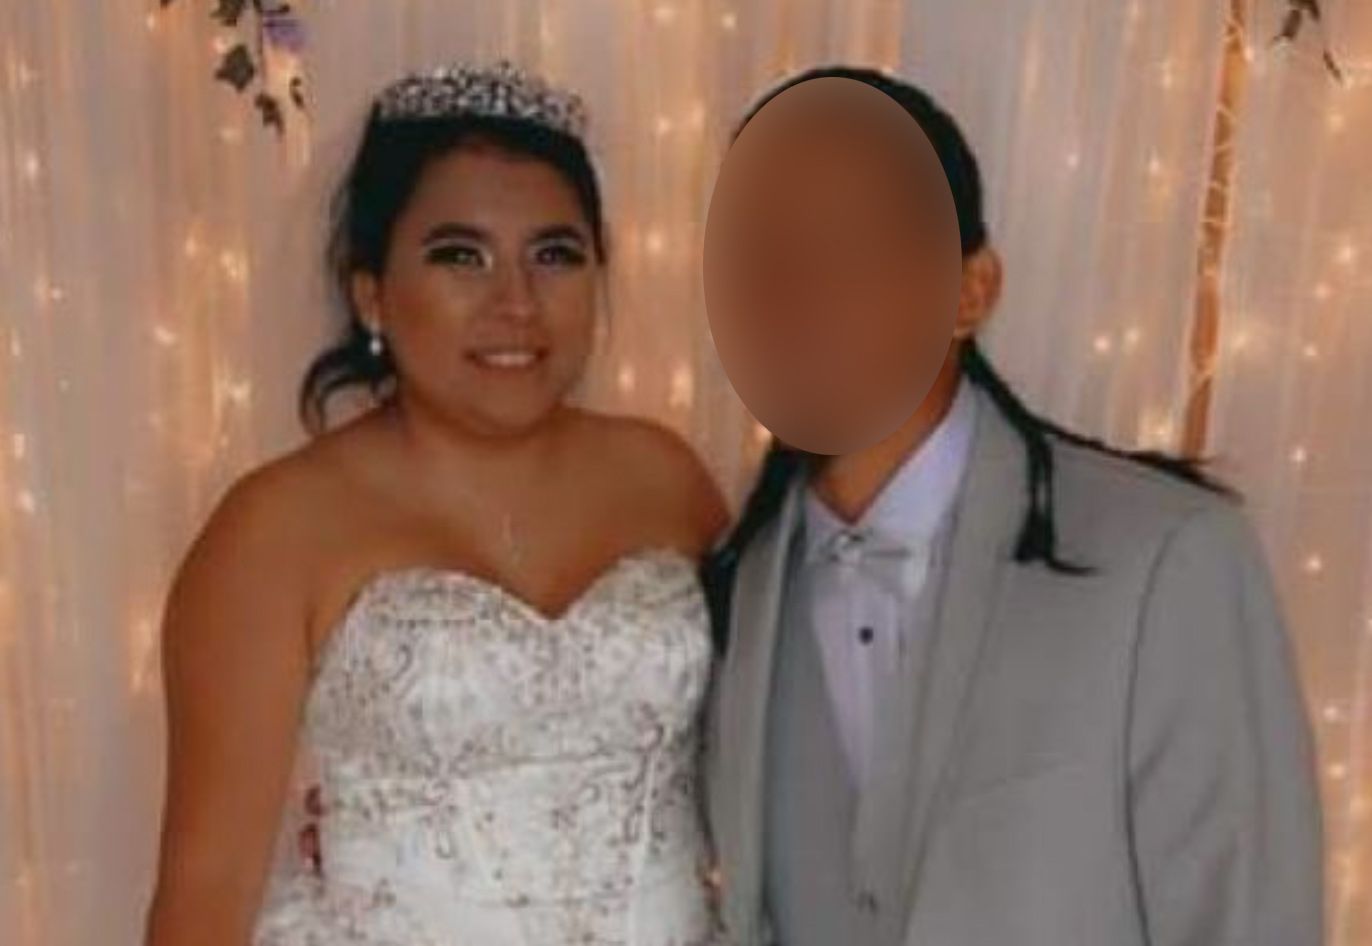 Frischvermählte Braut stirbt in falschen Crash-Stunden nach der Hochzeit in Utah: "So unwirklich"